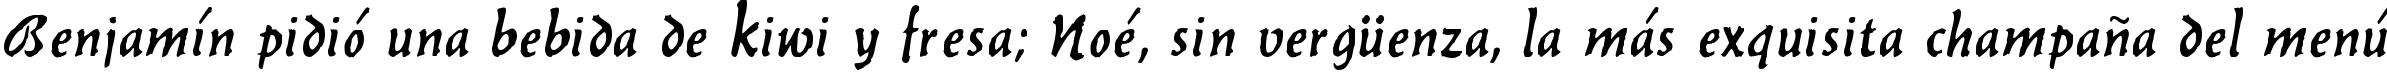 Пример написания шрифтом Balthazar Regular текста на испанском